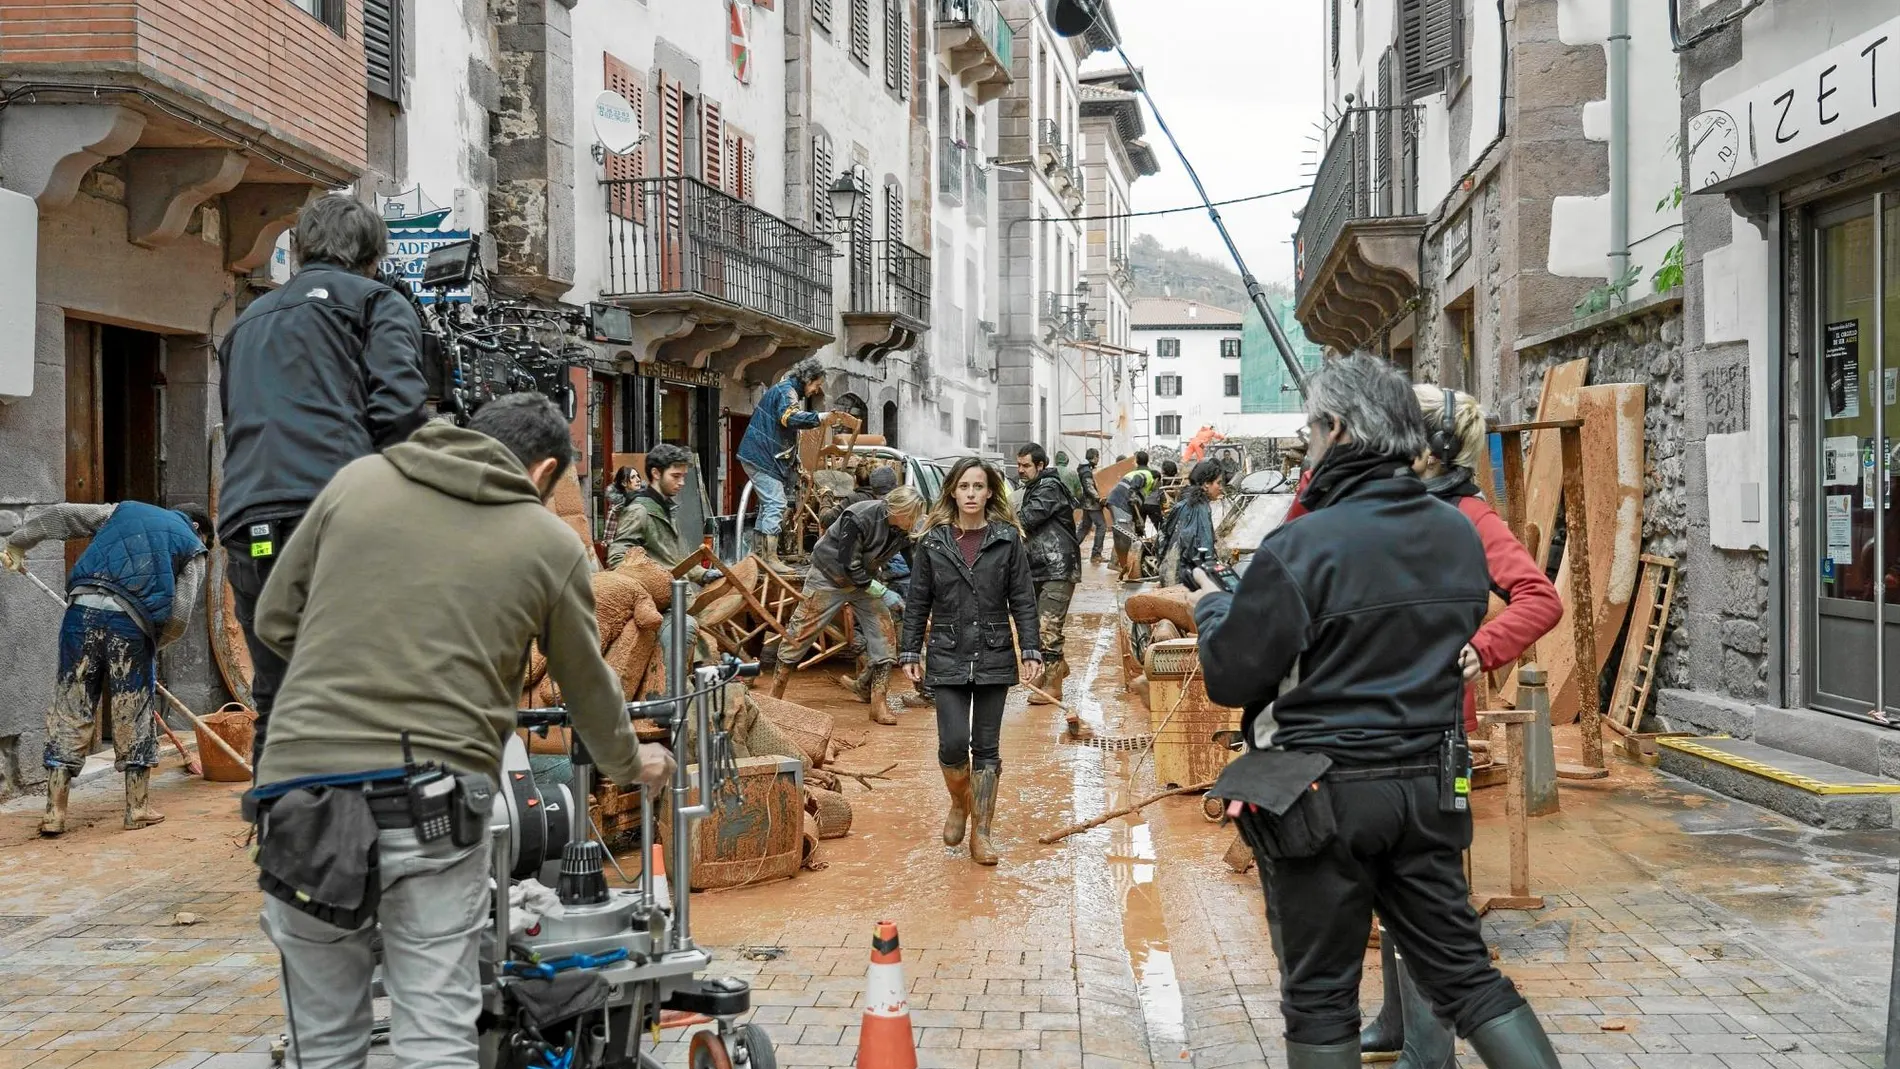 Marta Etura (en el centro) avanza por una calle enlodada en pleno rodaje en Elizondo